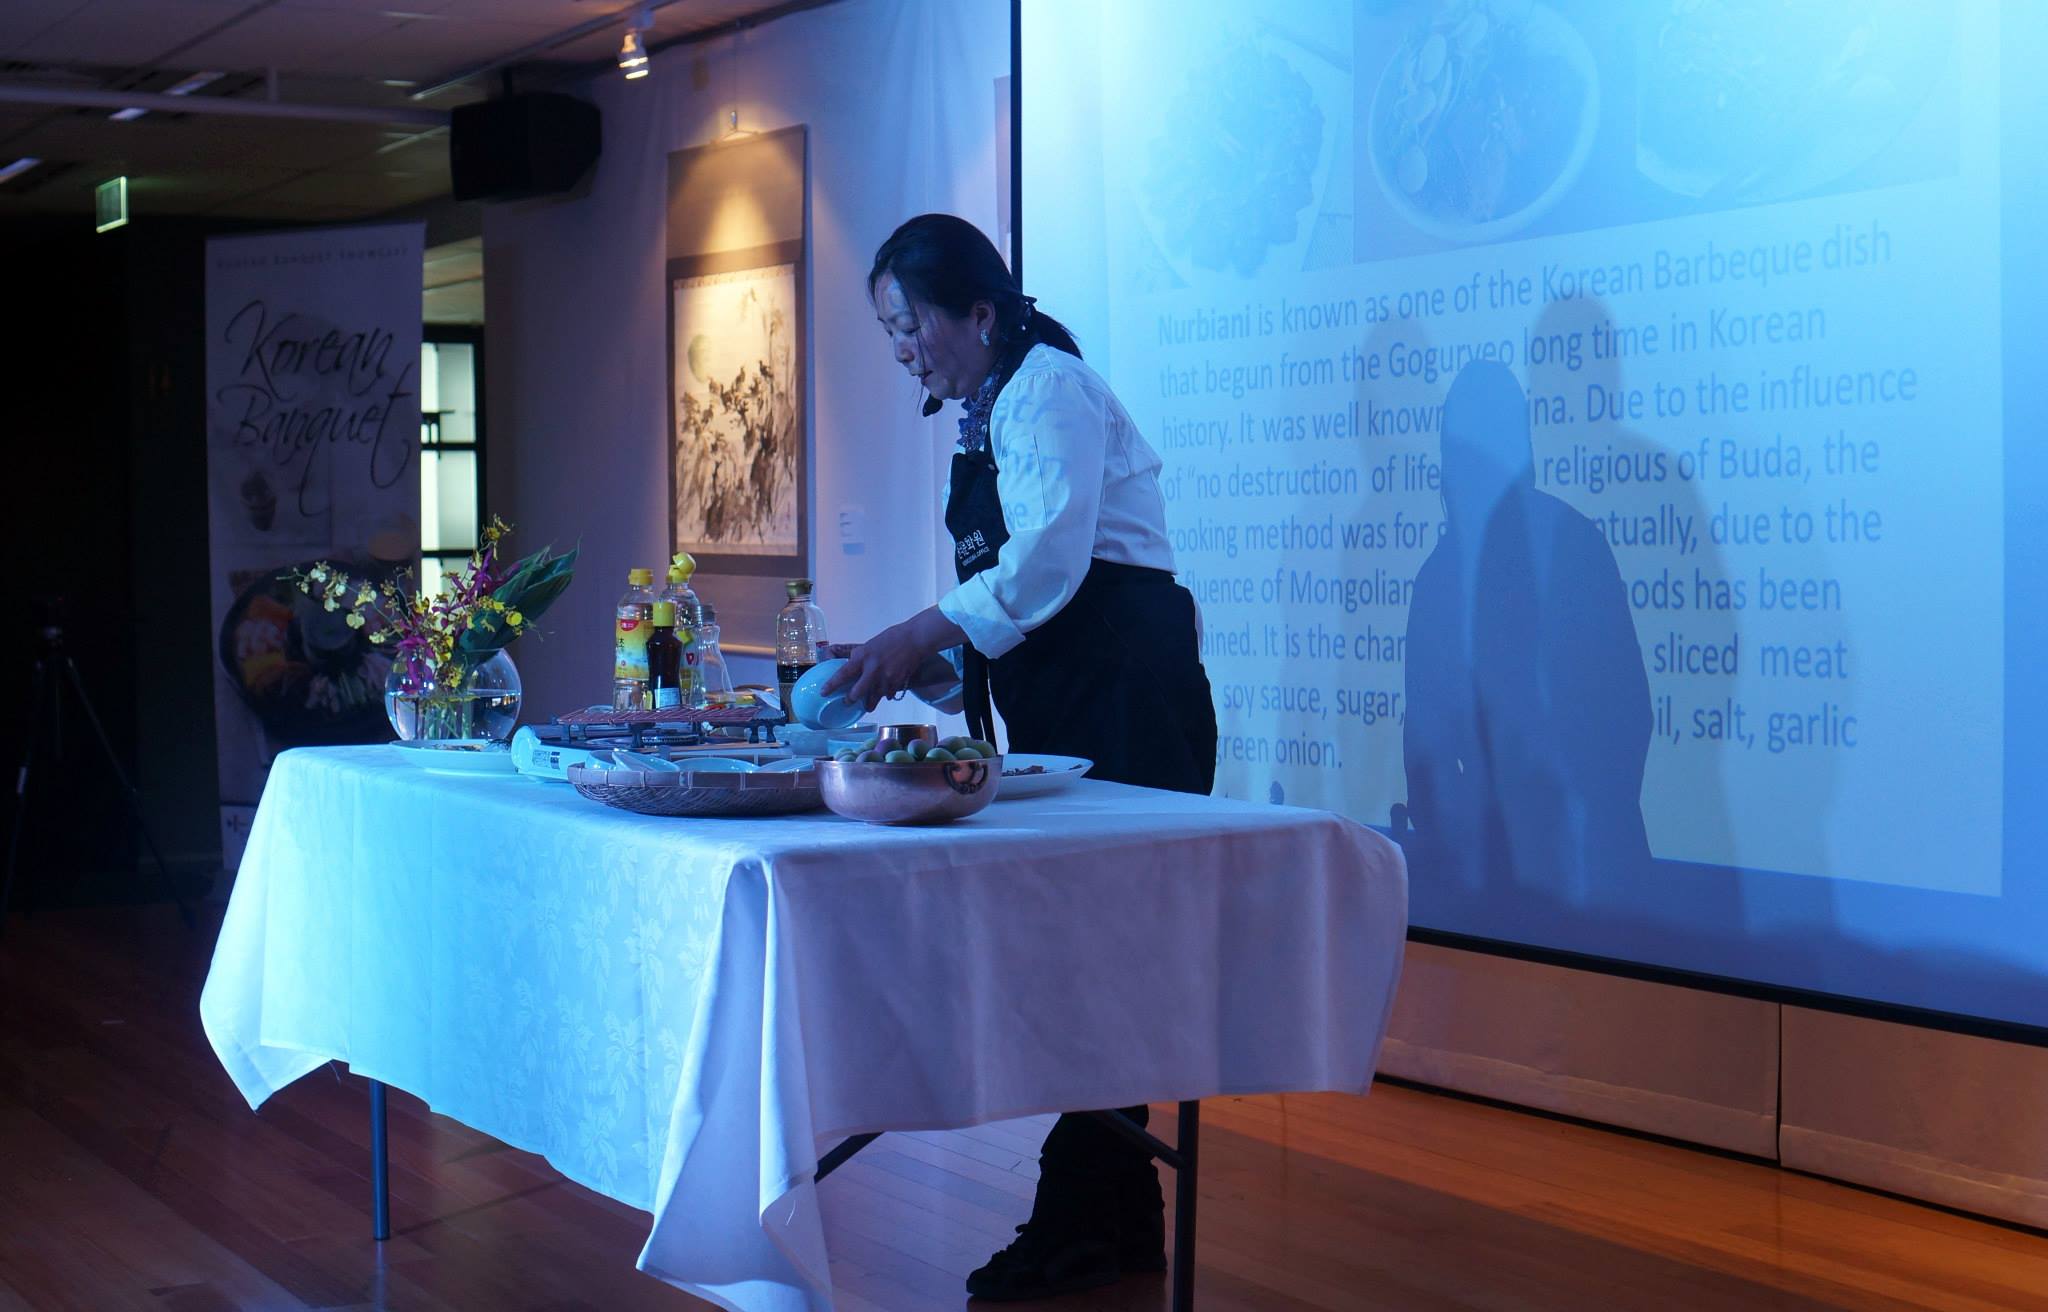 Korean Banquet Showcase, Sydney